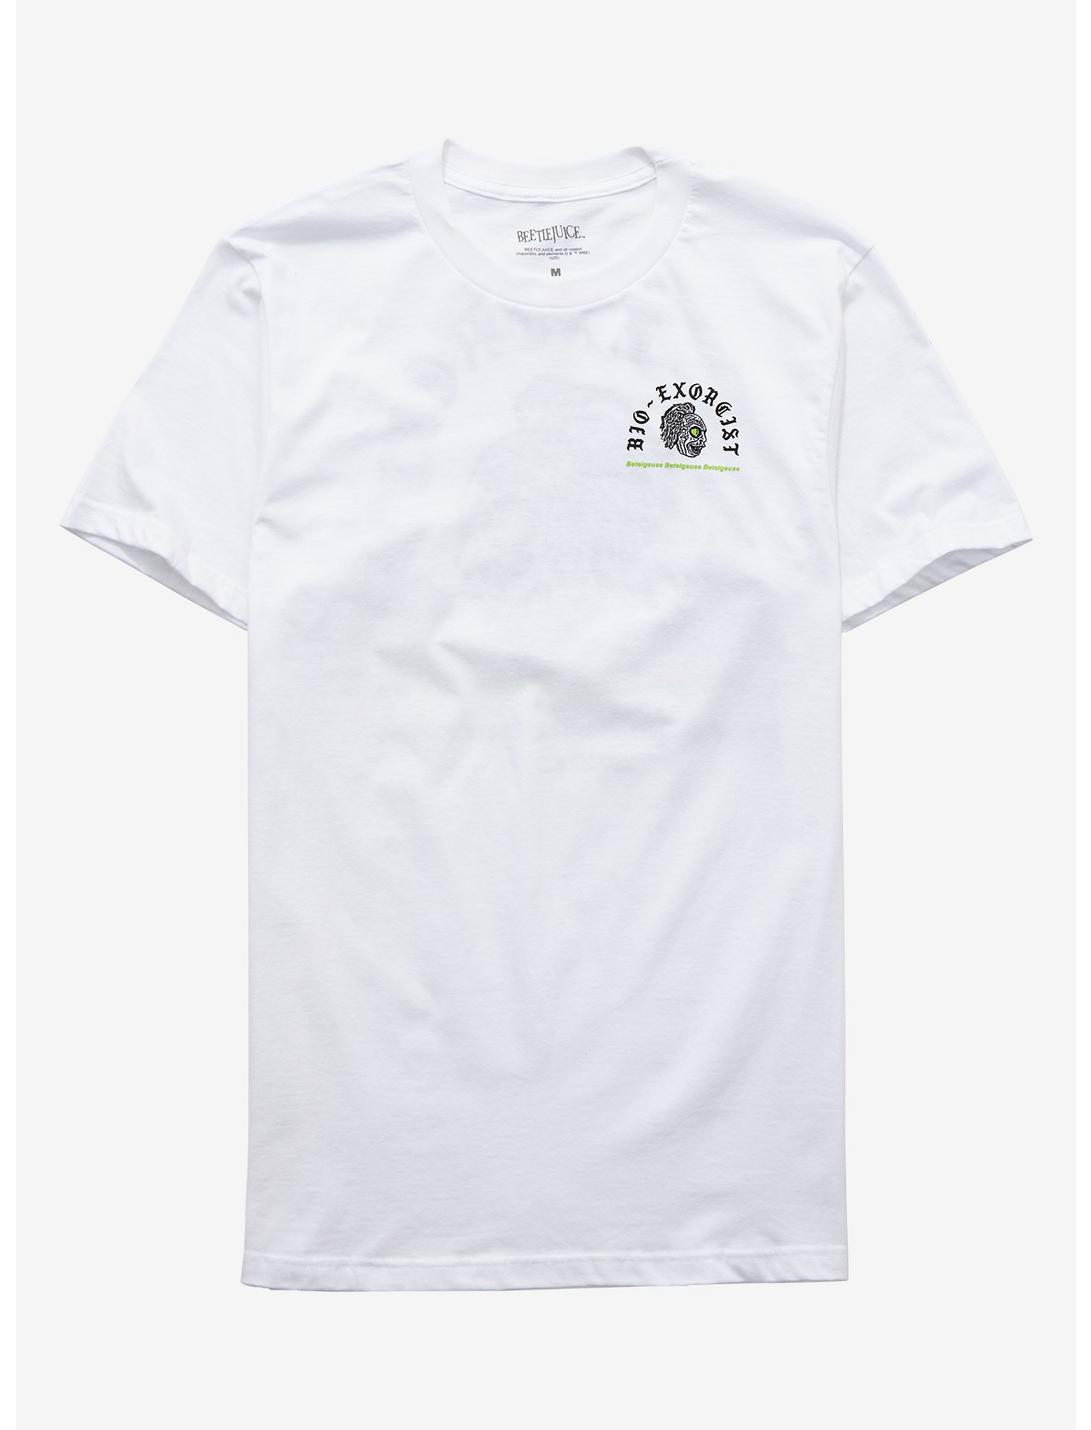 Beetlejuice Bio-Exorcist T-Shirt, WHITE, hi-res